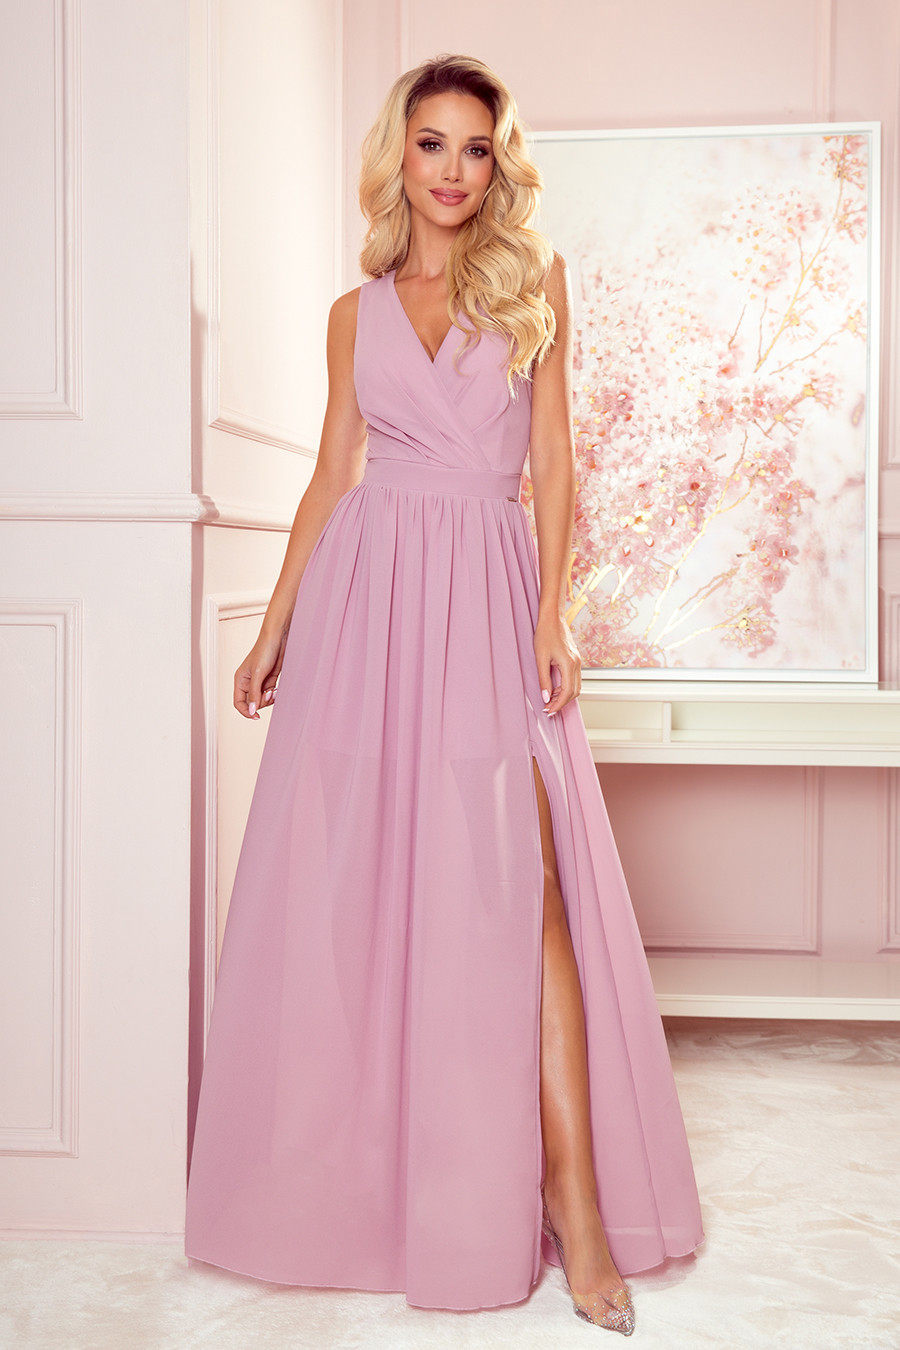 JUSTINE - Dlouhé dámské šaty v pudrově růžové barvě s výstřihem a zavazováním 362-3 S